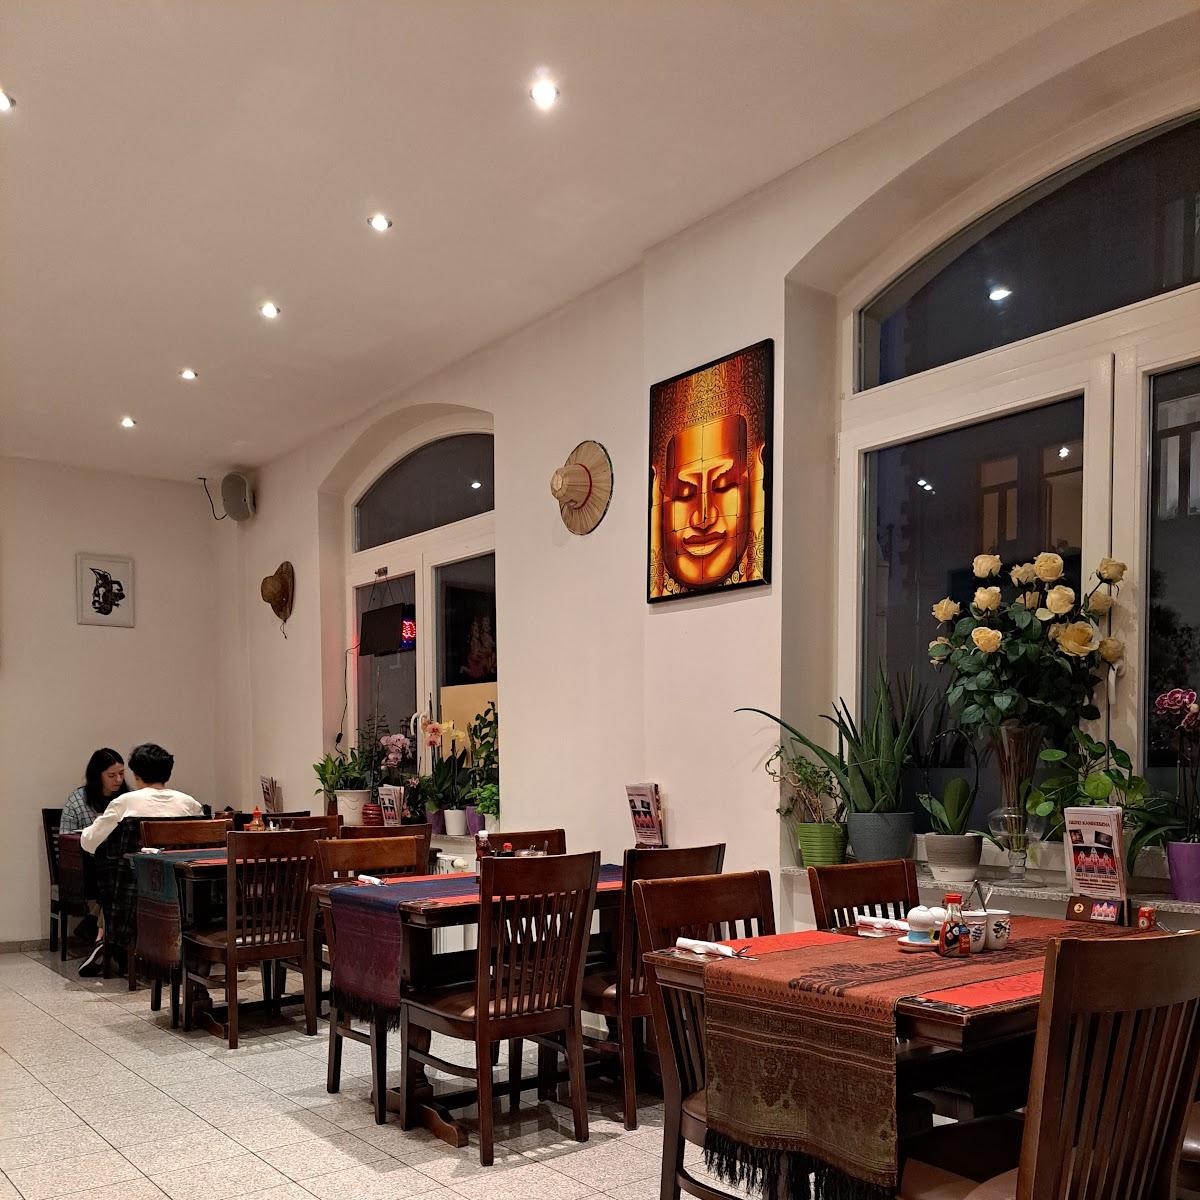 Restaurant "Bistro Kambodscha" in Saarbrücken